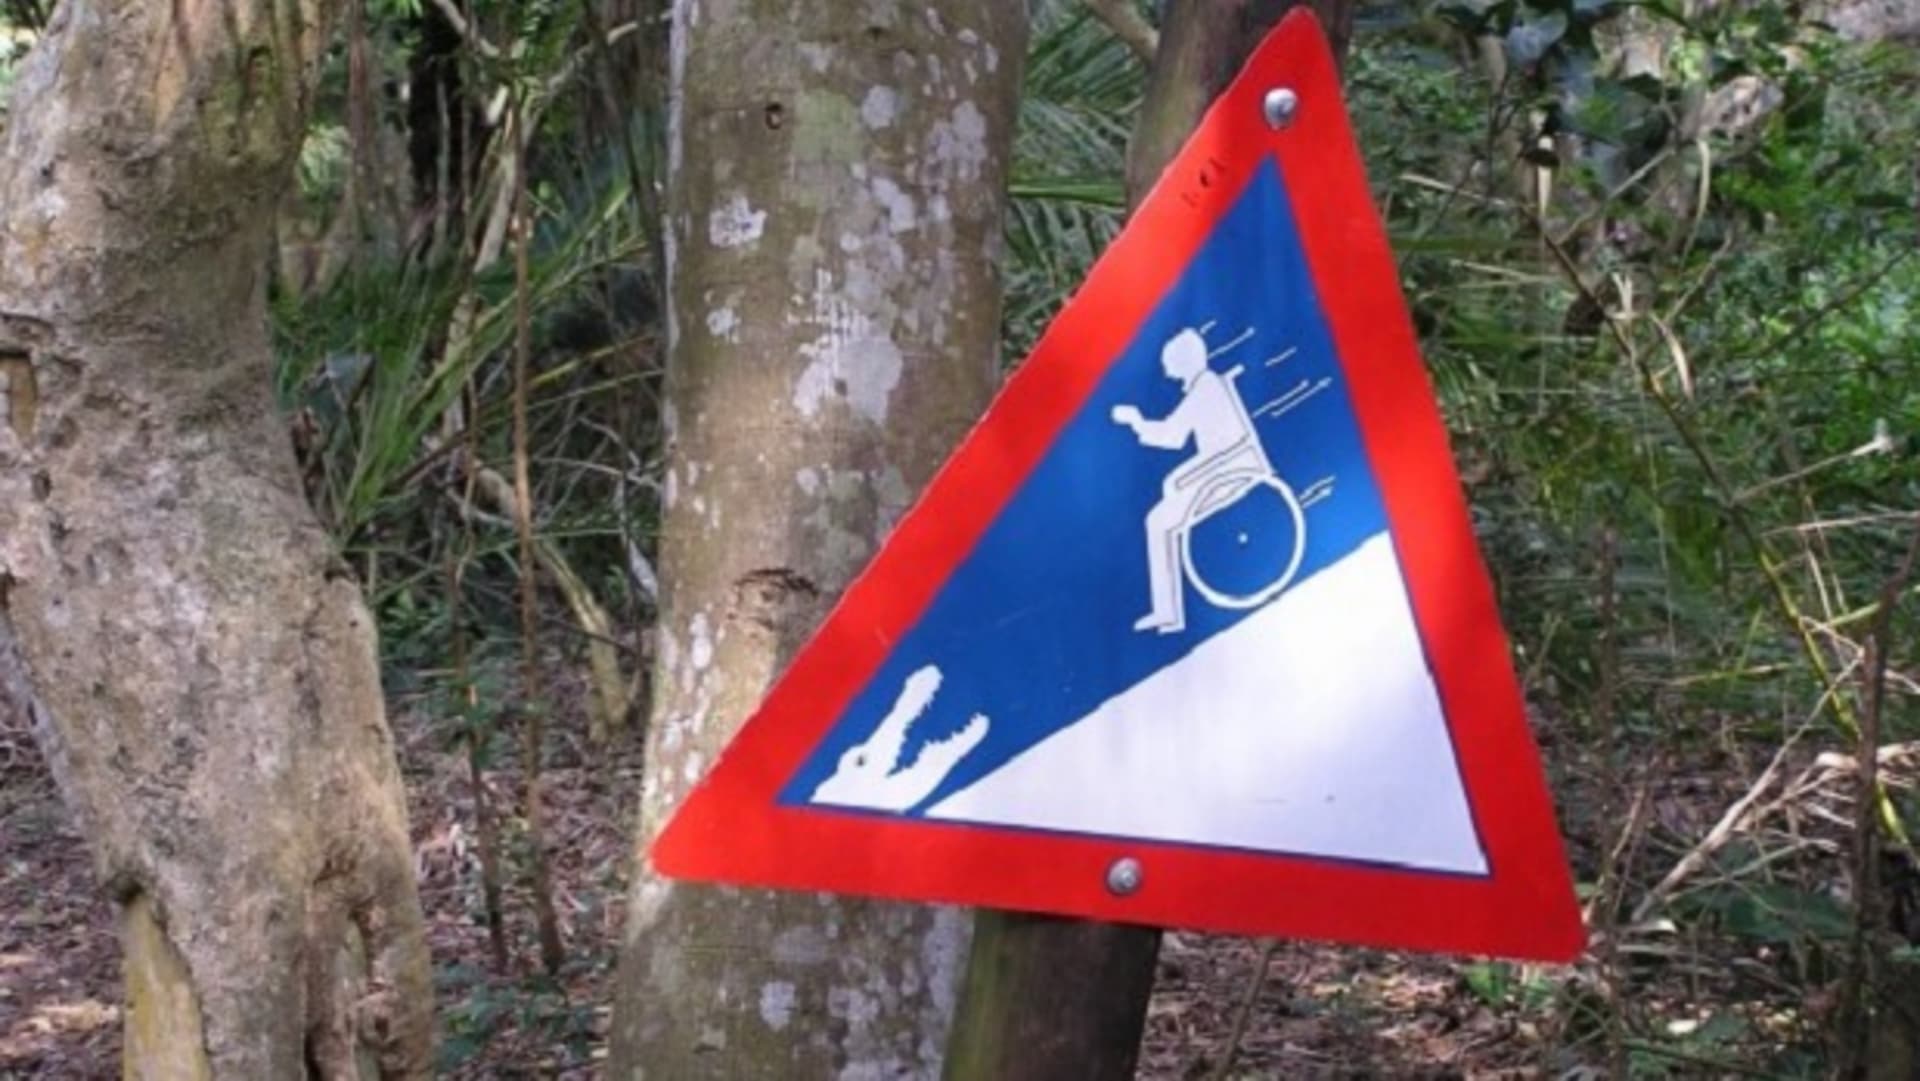 Jihoafrický národní park St. Lucia - varování pro invalidy je velmi explicitní...